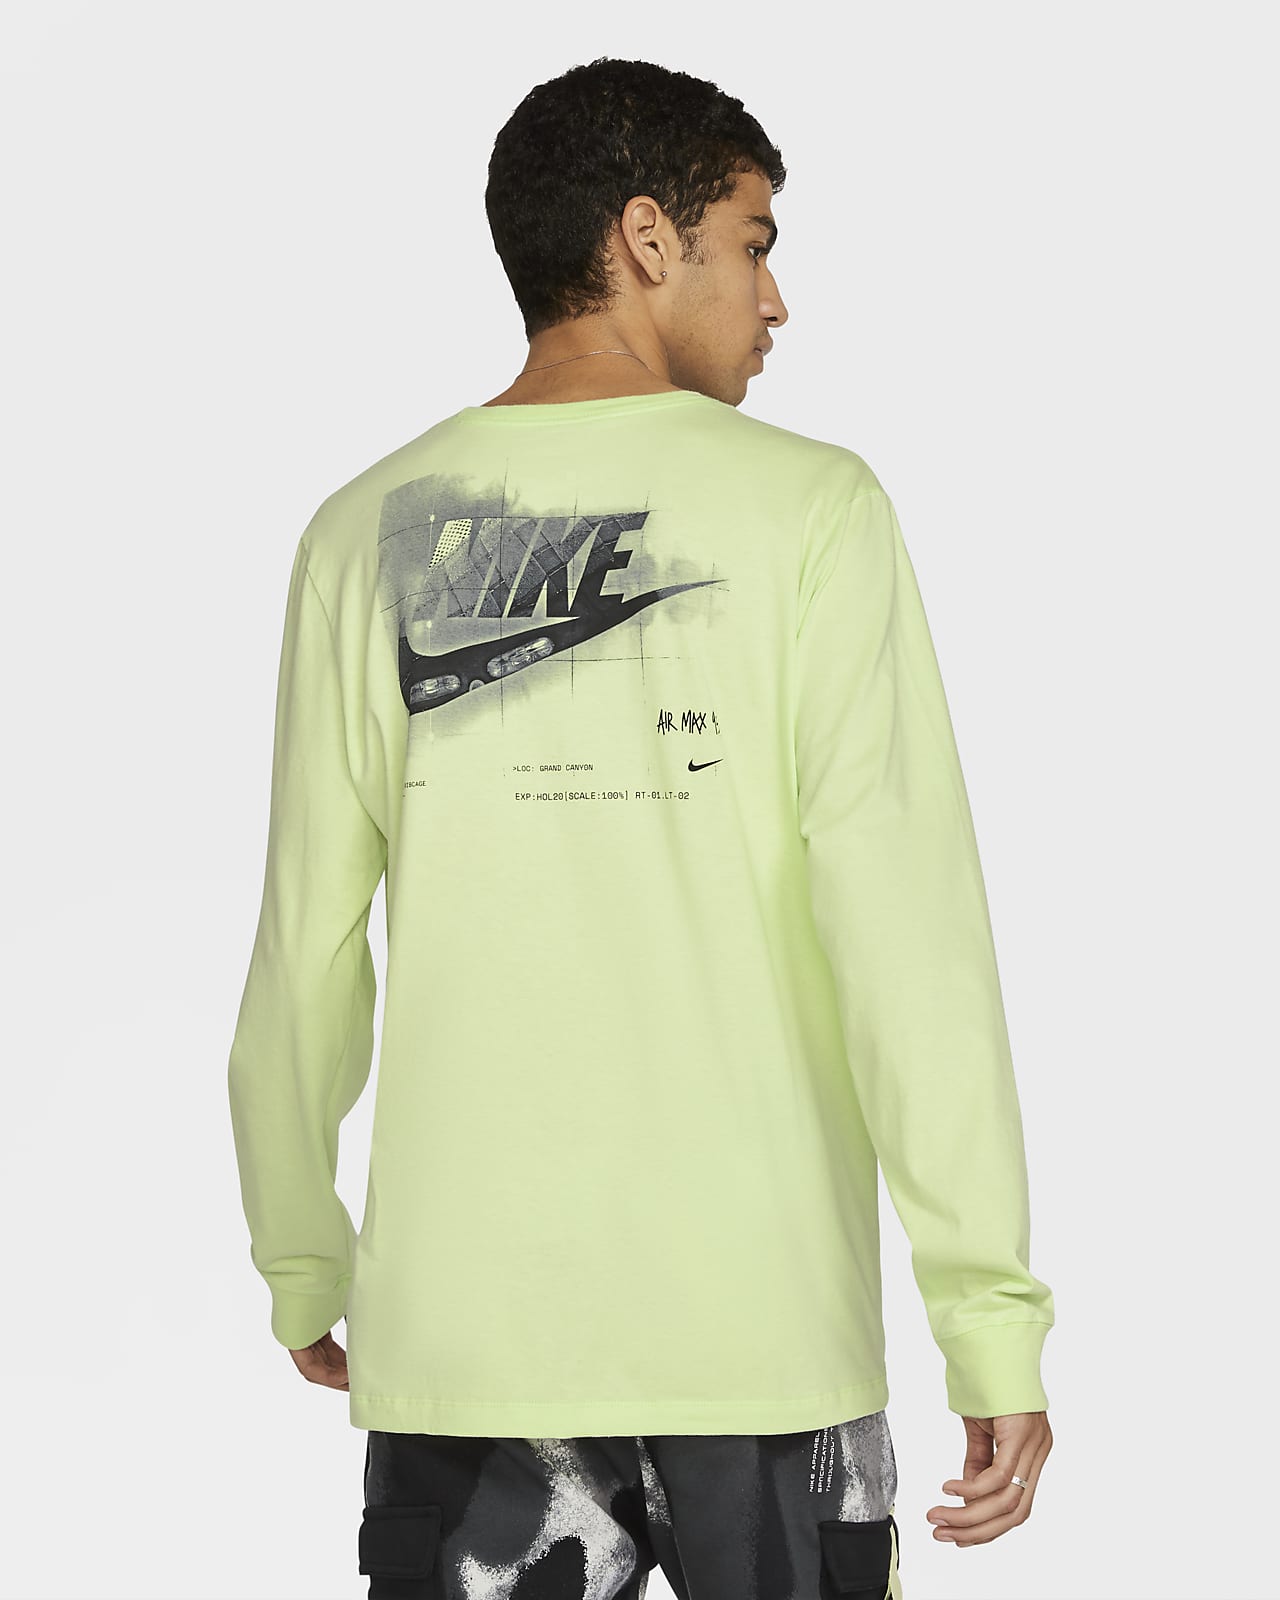 Nike Sportswear SNKRS Men's Long-Sleeve T-Shirt.